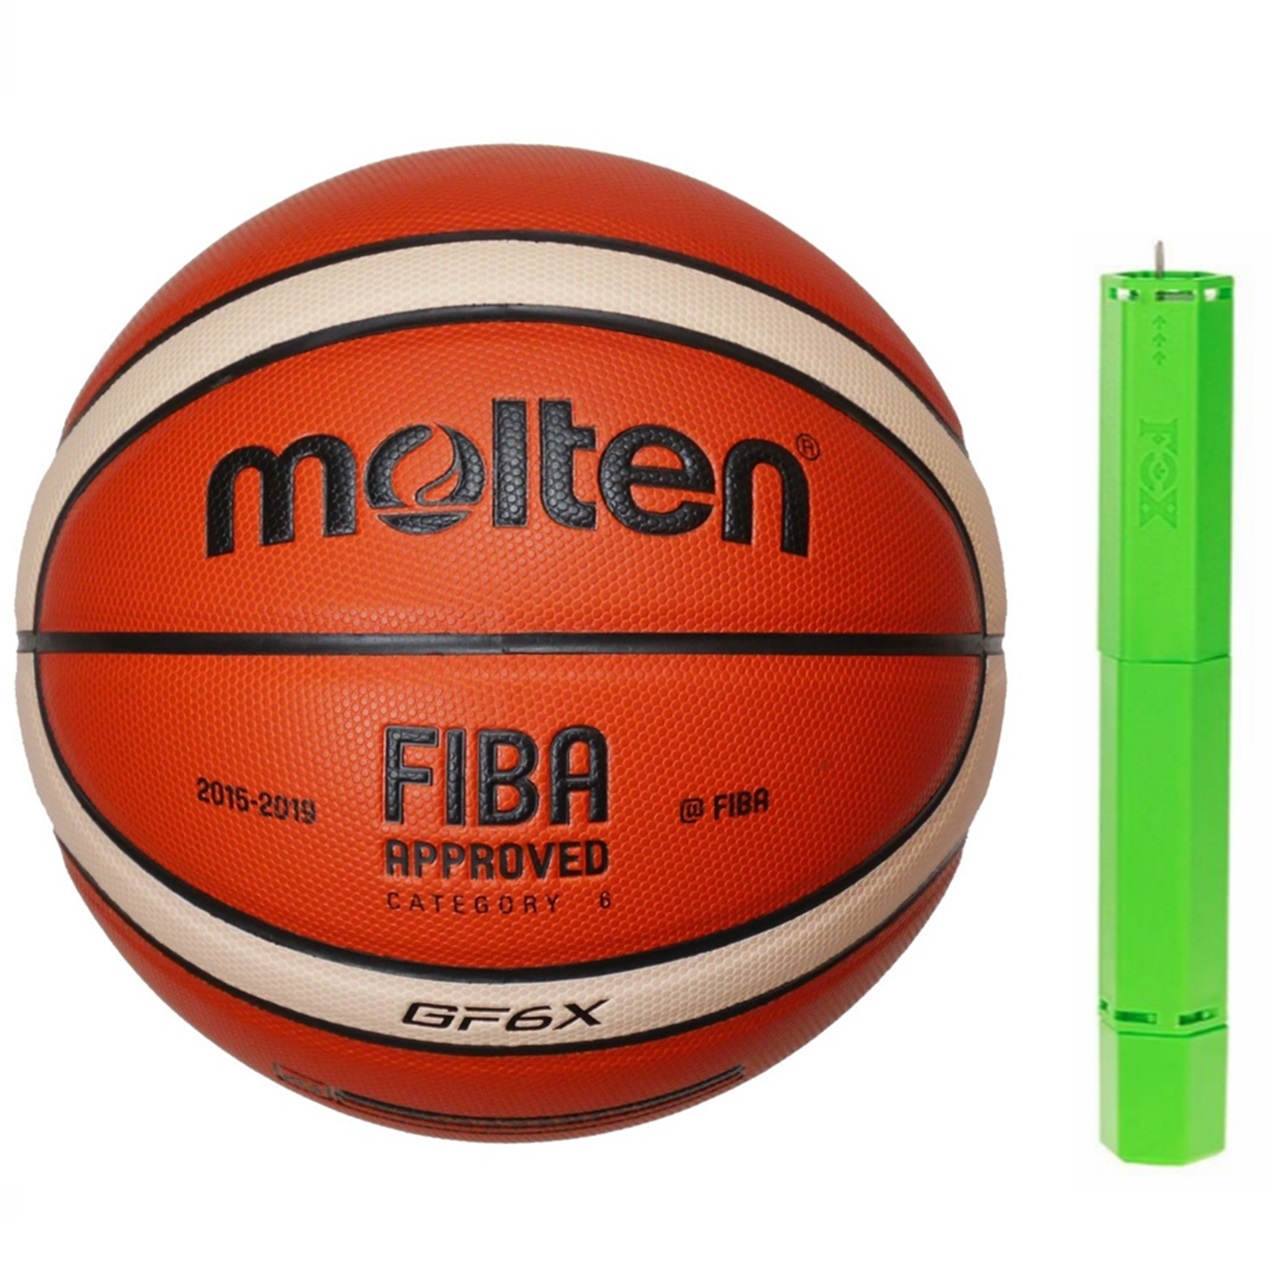 توپ بسکتبال مولتن مدل GF6X به همراه تلمبه فاکس